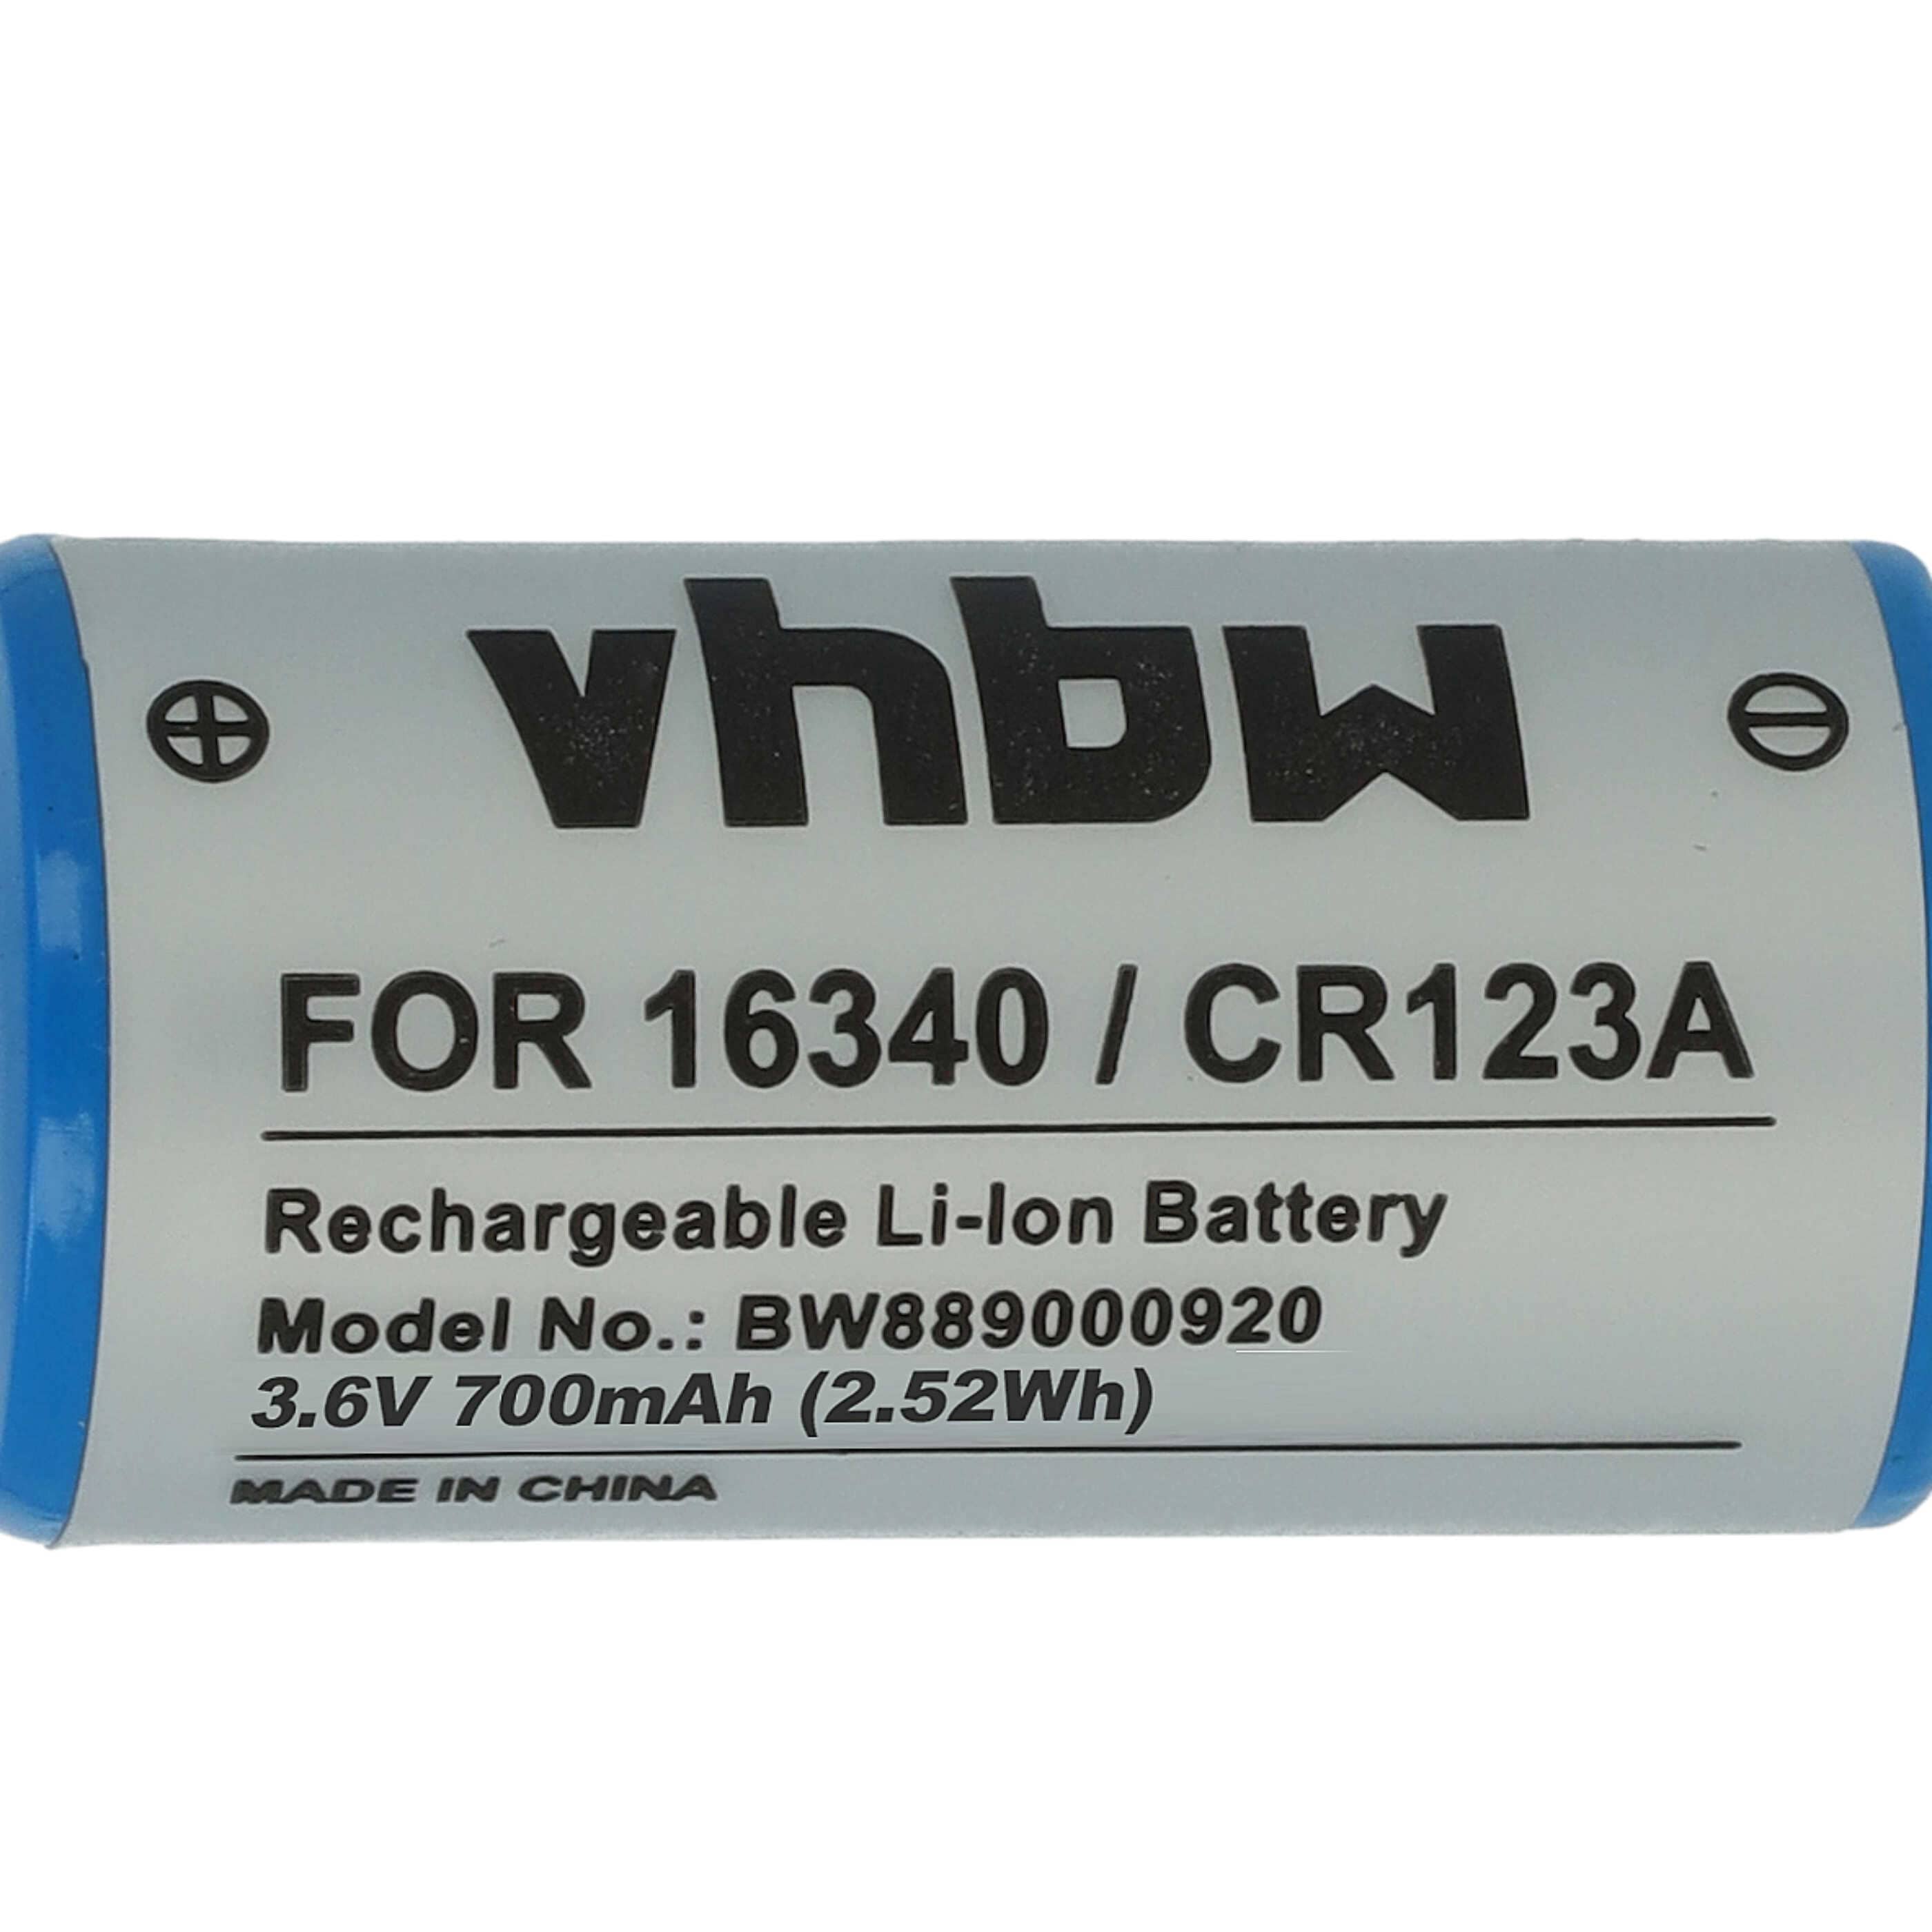 Battery Replacement for 16340, DL123A, CR123R, CR17335, EL123AP, K123LA, CR17345, CR123A - 700mAh 3.6V Li-Ion